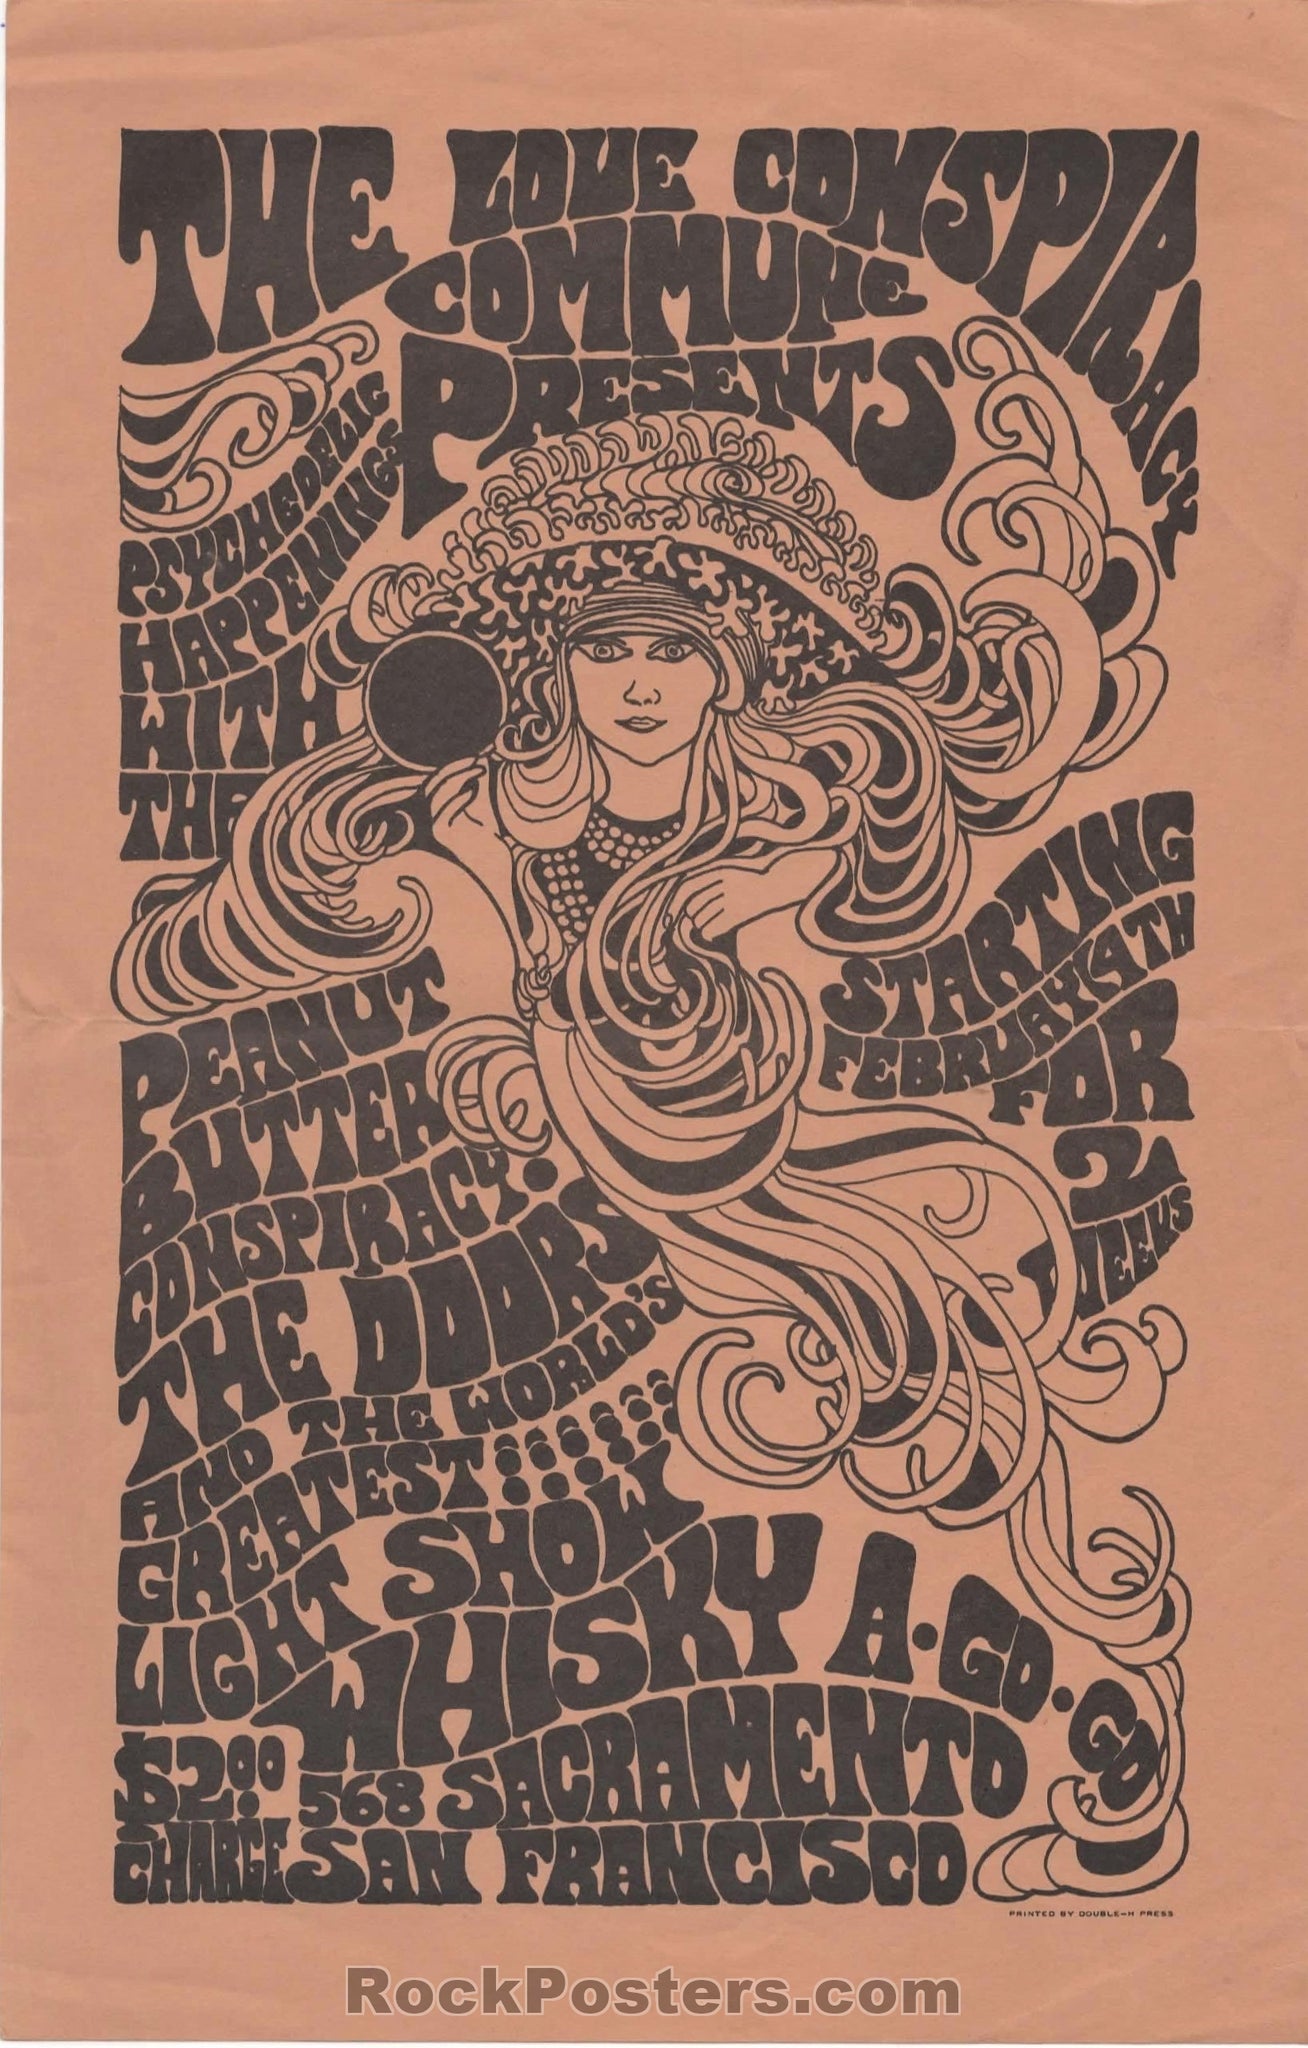 AUCTION - AOR-2.195 - The Doors 1967 Handbill - SF Whisky-A-Go-Go - Excellent 